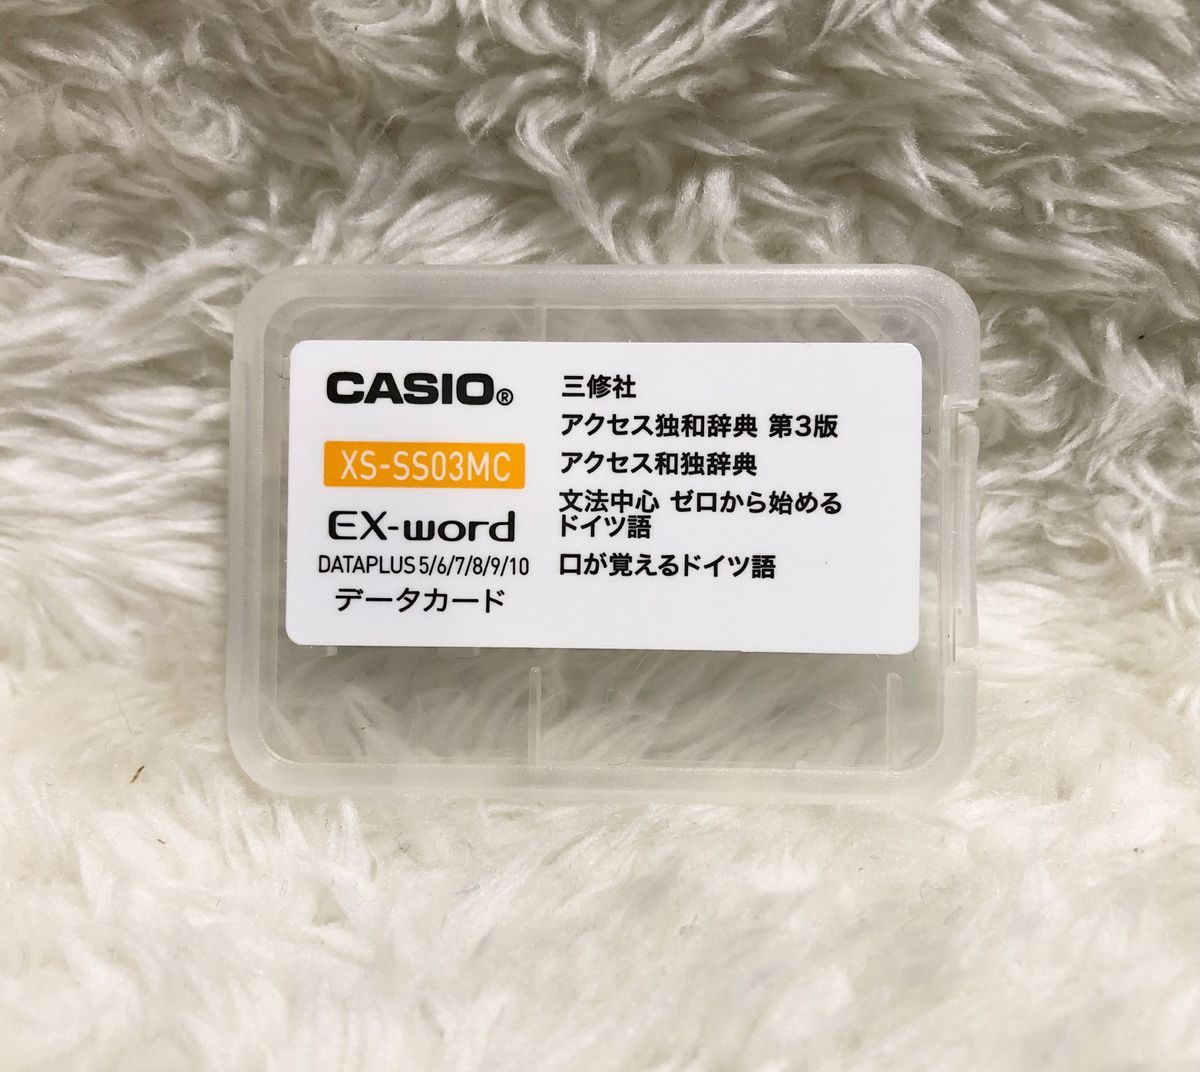 ★ドイツ語カード付き★ CASIO 電子辞書 理化学モデル XD-Z9850